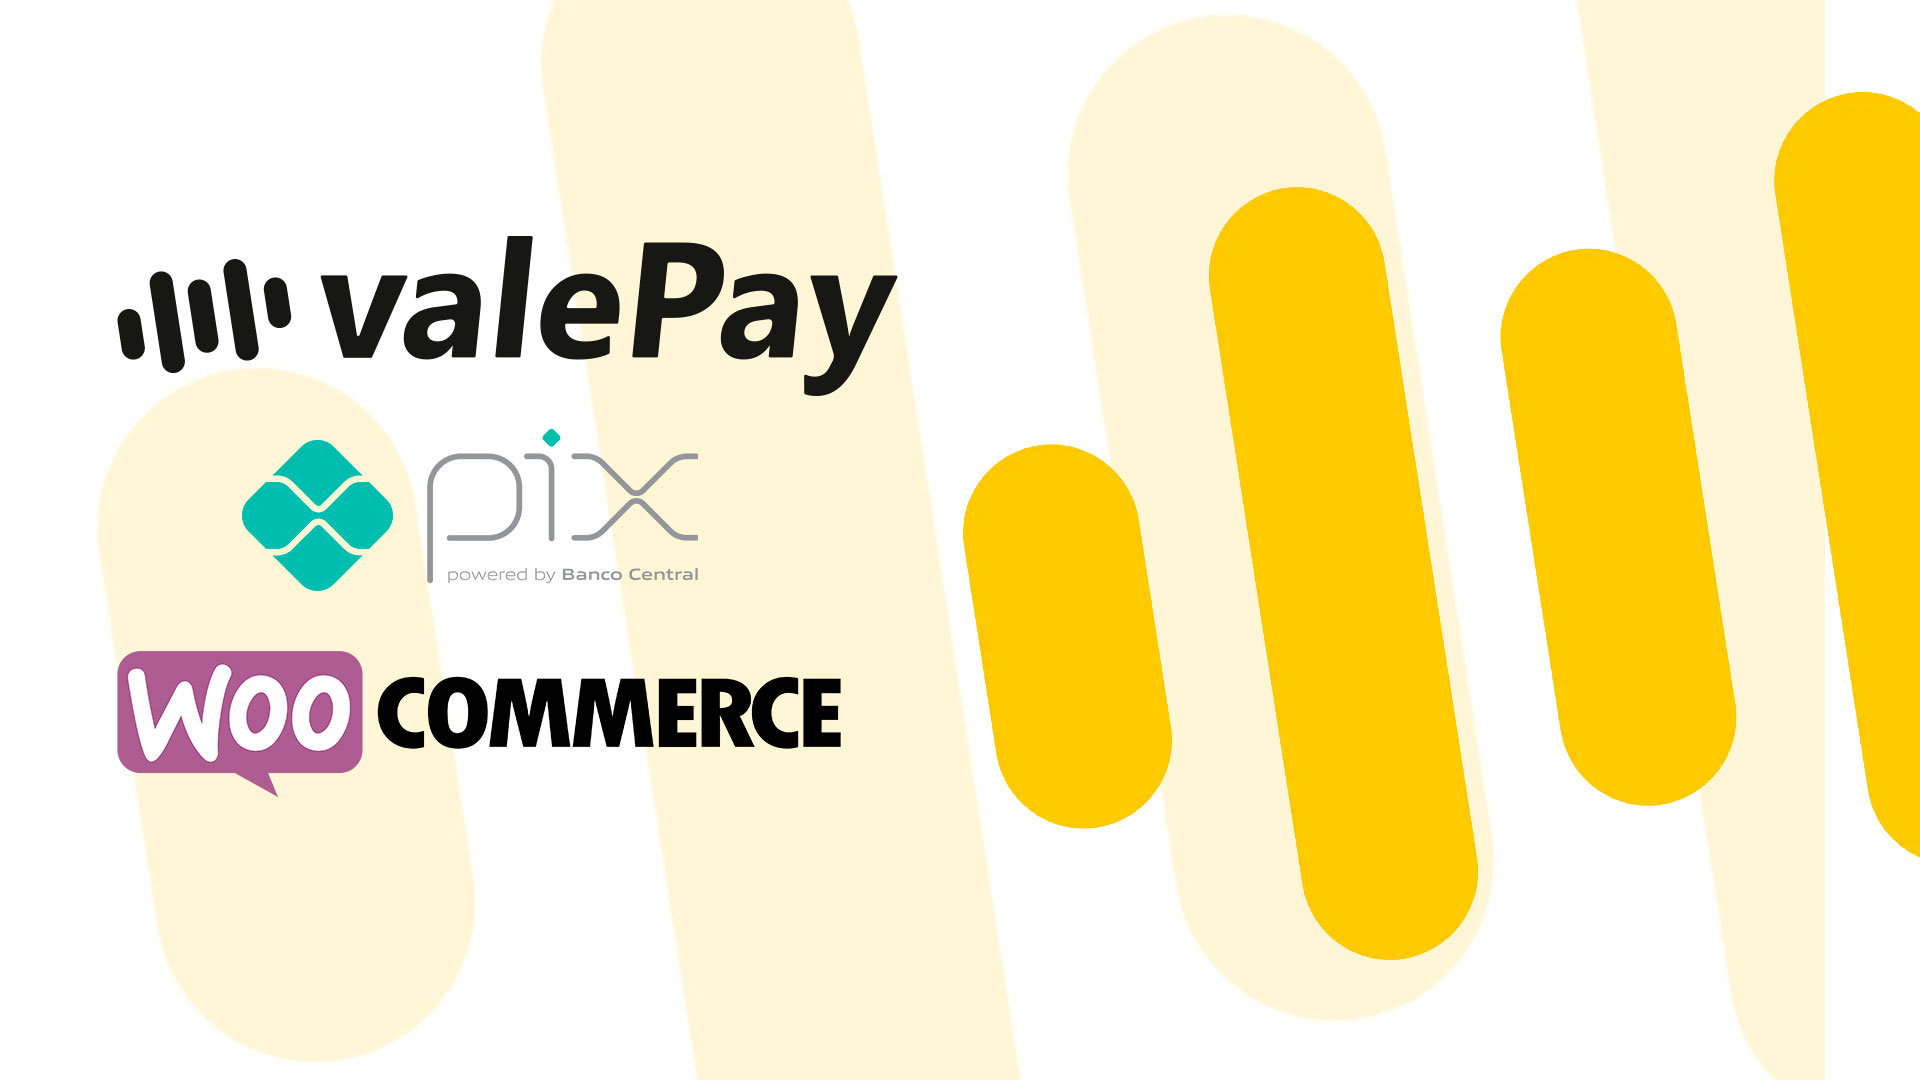 [Manual de Uso] Plugin ValePay PIX e ValePay Cartão de Crédito para WordPress e WooCommerce